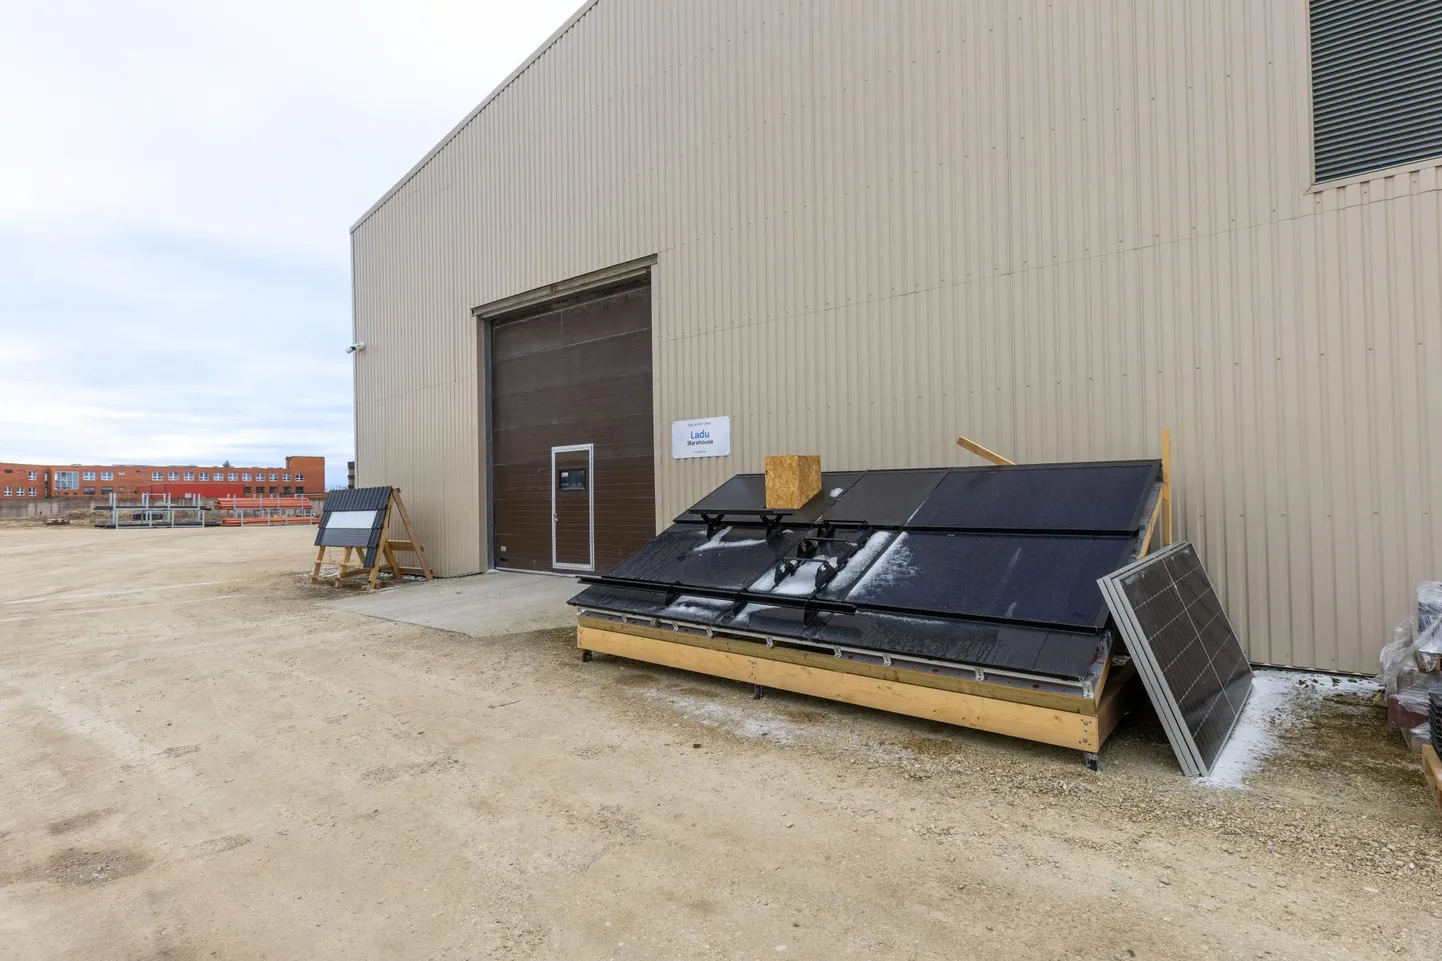 Kuigi uute omanike käes, jääb Solarstone ikka Viljandi ettevõtteks ja siinne tehas, millesse on palju investeeritud, tegutseb edasi. Peakontori uue asukohana on hakatud aga välja käima Tartut.